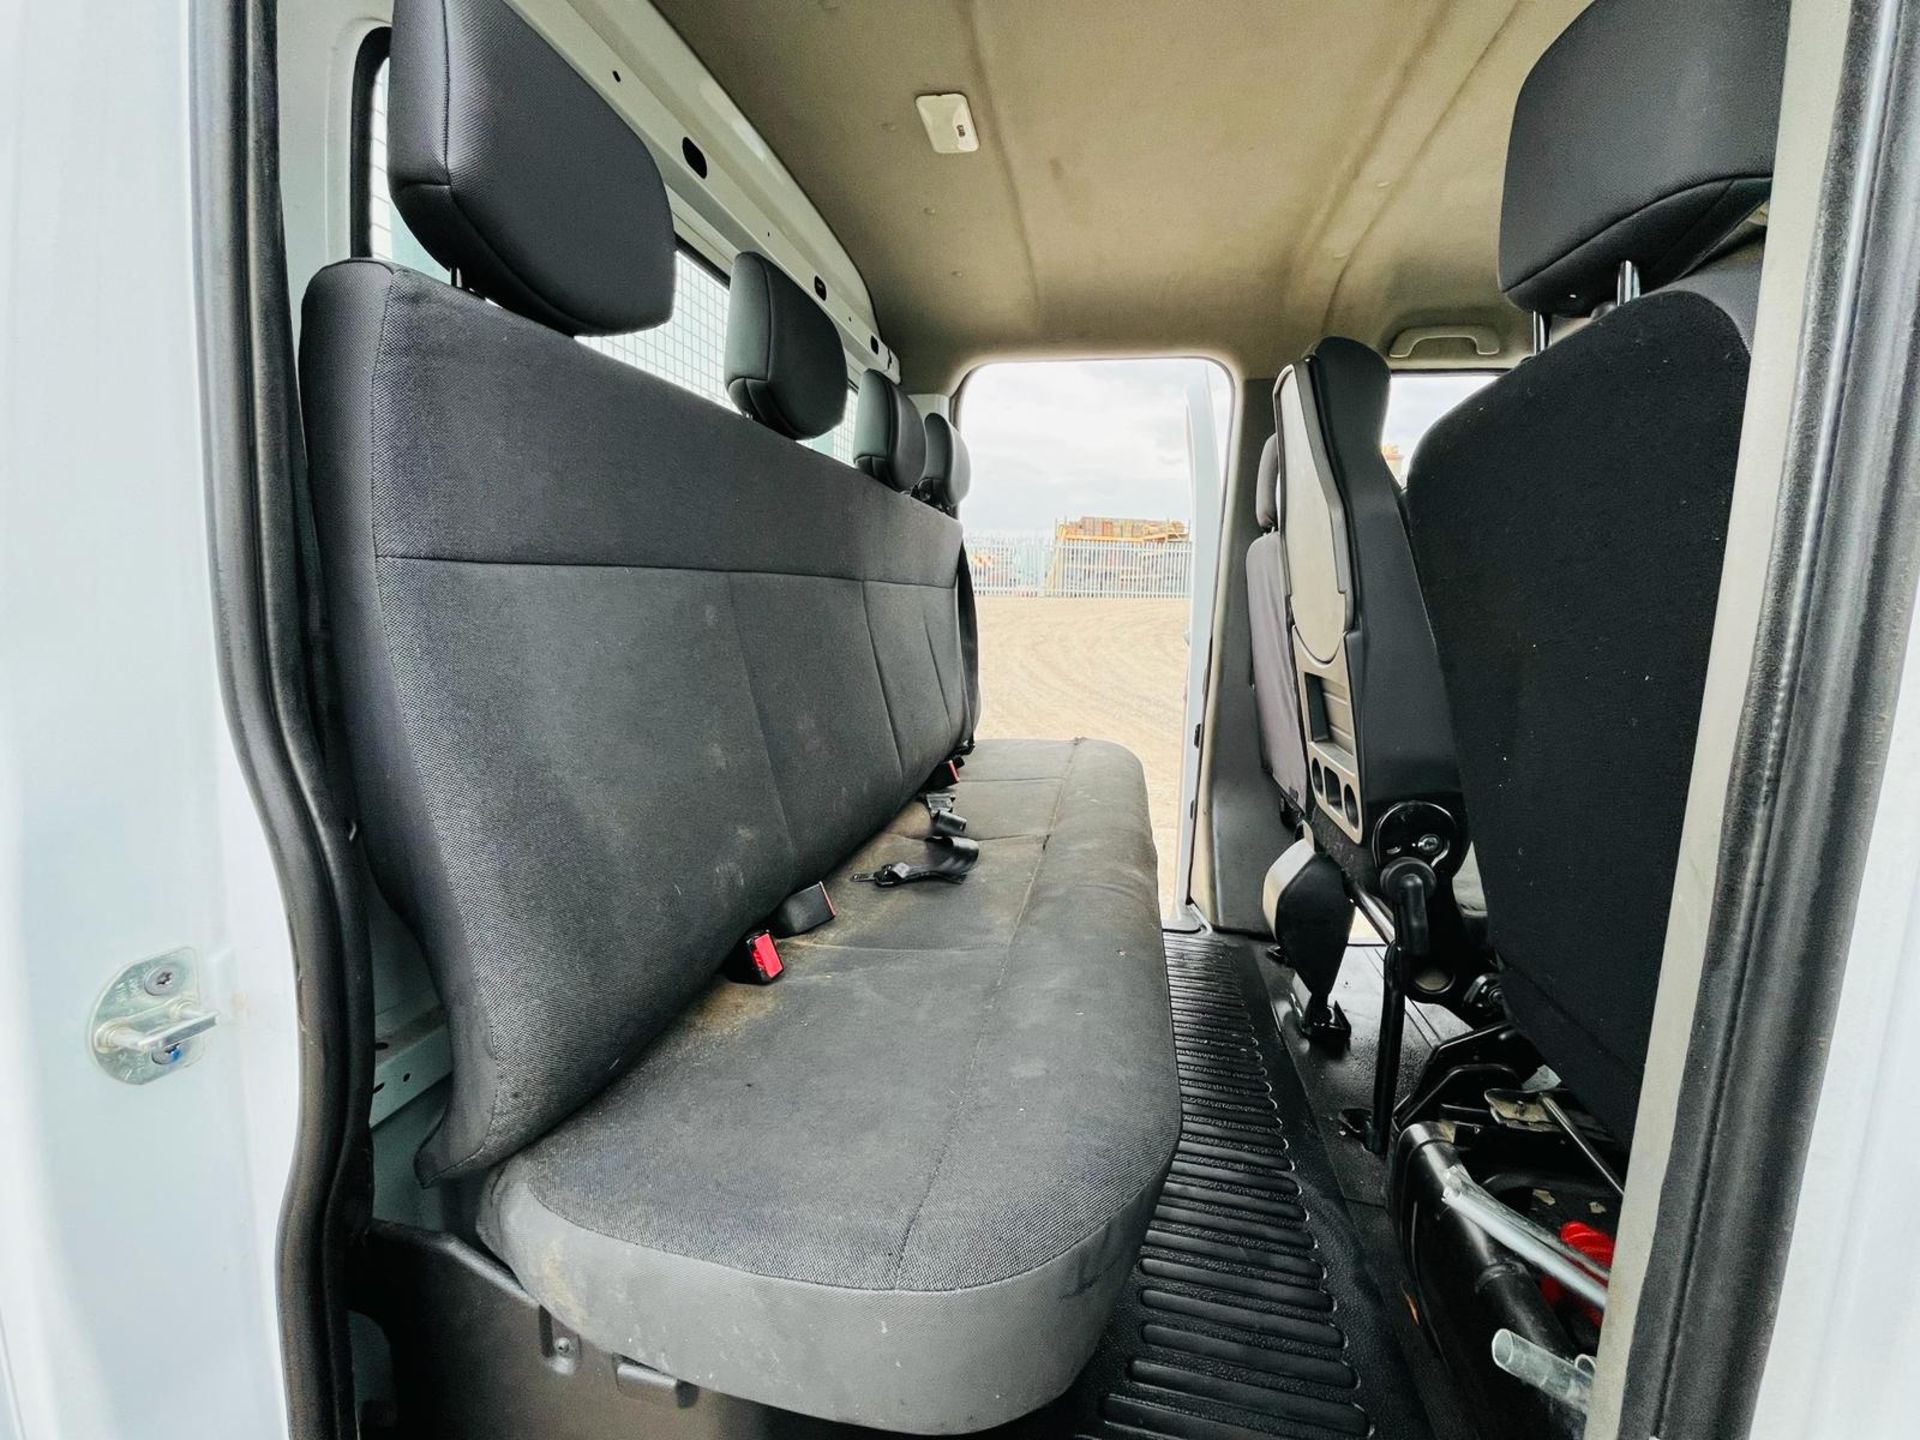 Nissan NV400 Dropside Crew Cab SE 2.2 DCI 130 L3 H1 2019 '68 Reg'-ULEZ Compliant - Dropside Body - Image 28 of 30